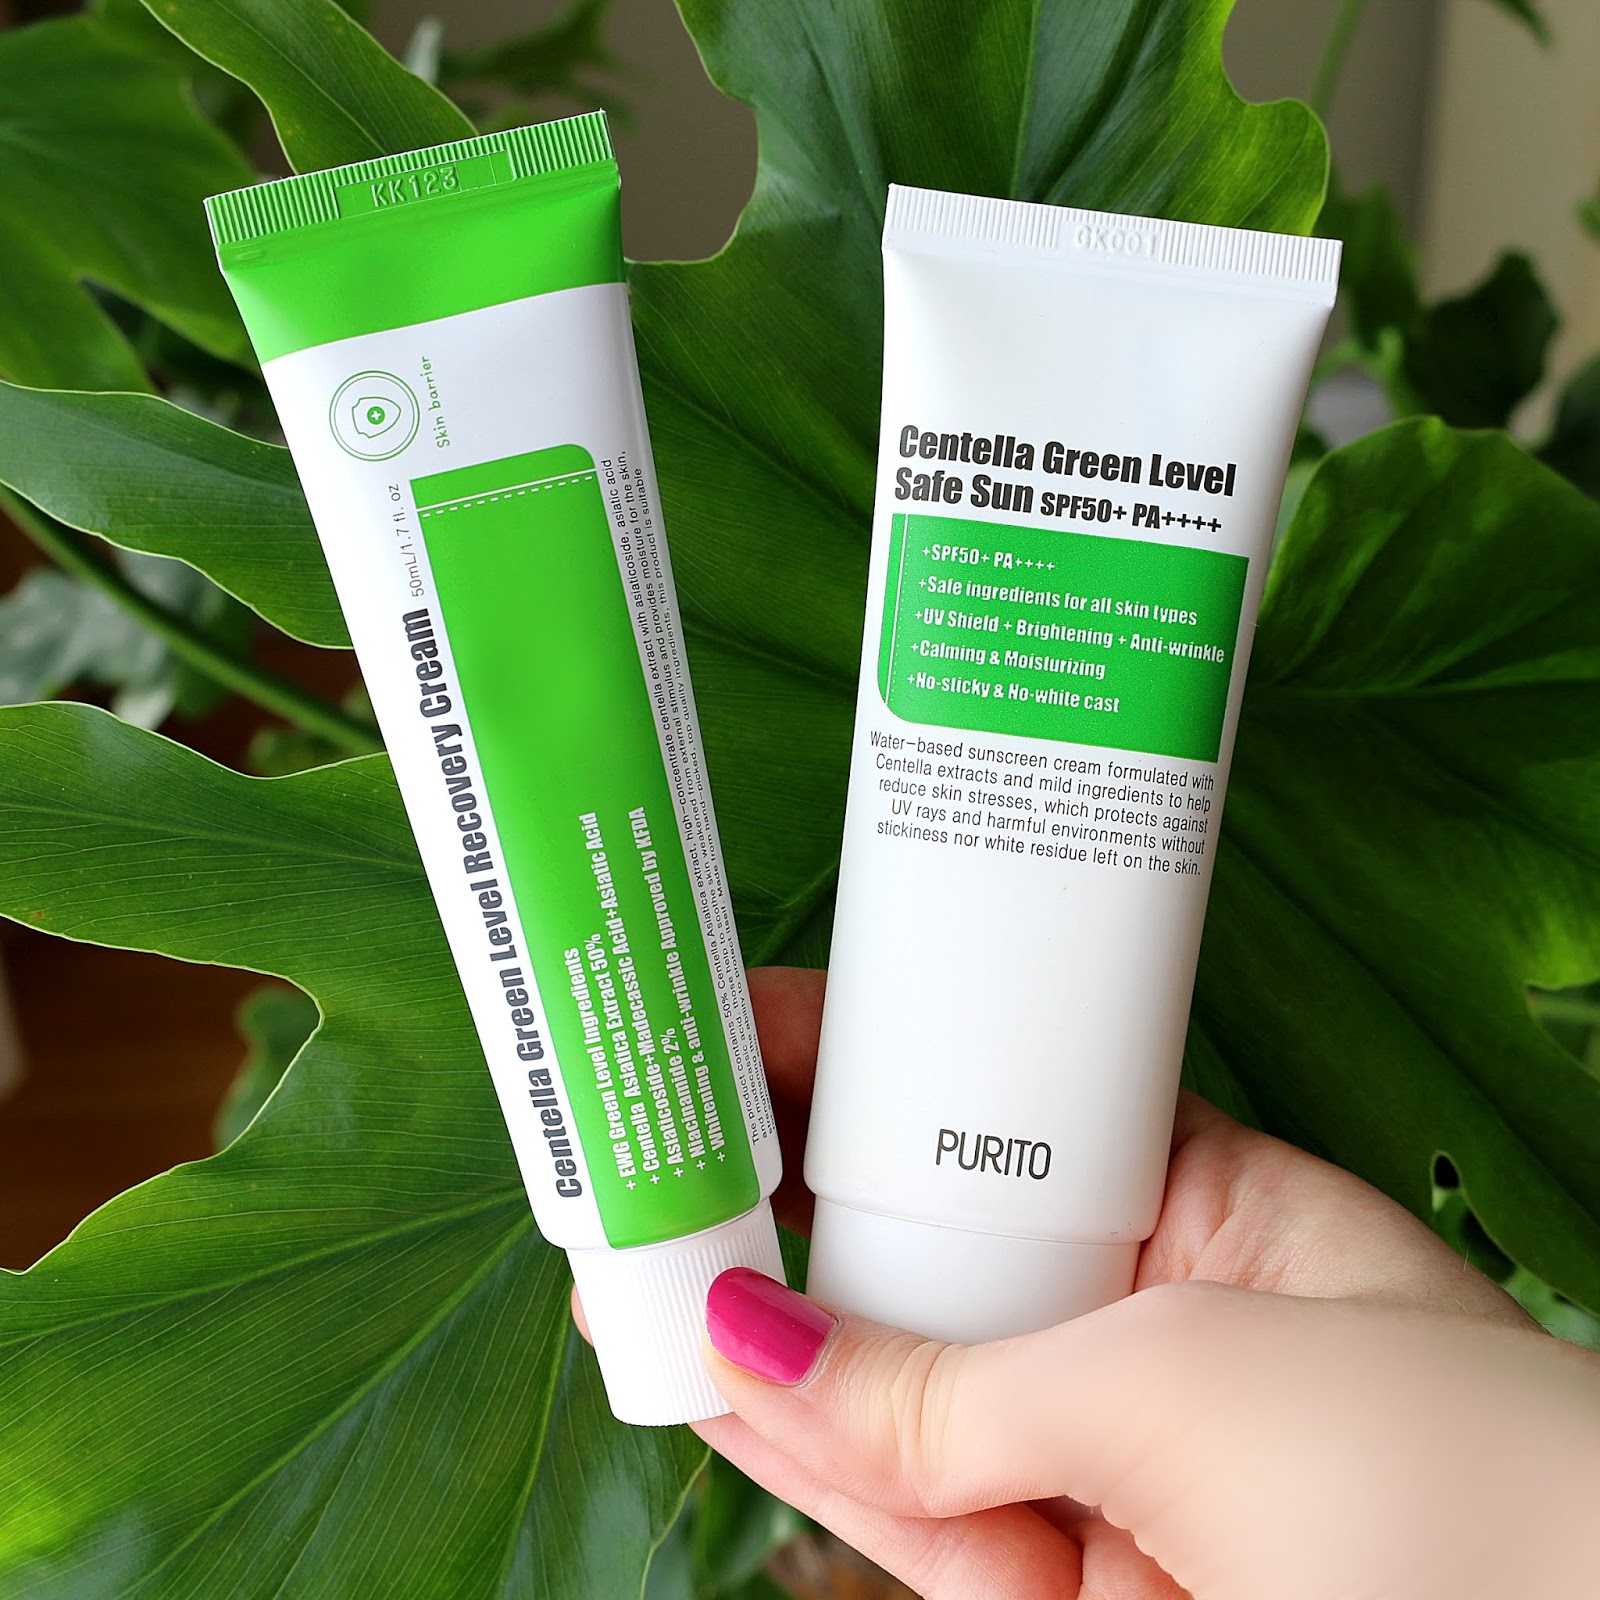 PURITO Centella Green Level Recovery Cream Safe Sun Korean Skincare Review